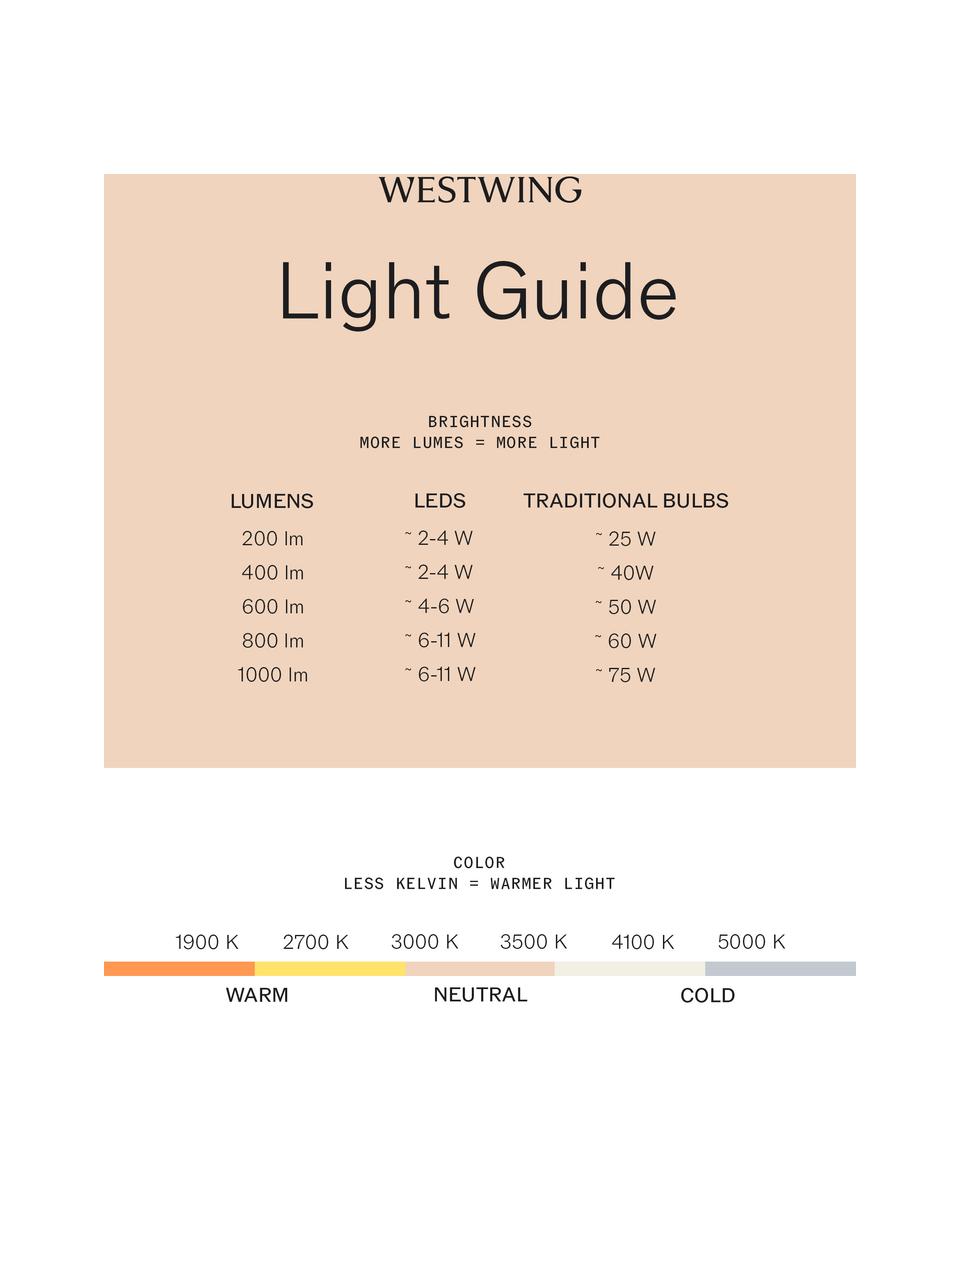 Stmívatelné nástěnné LED svítidlo Hester, Černá, bílá, Š 20 cm, V 26 cm